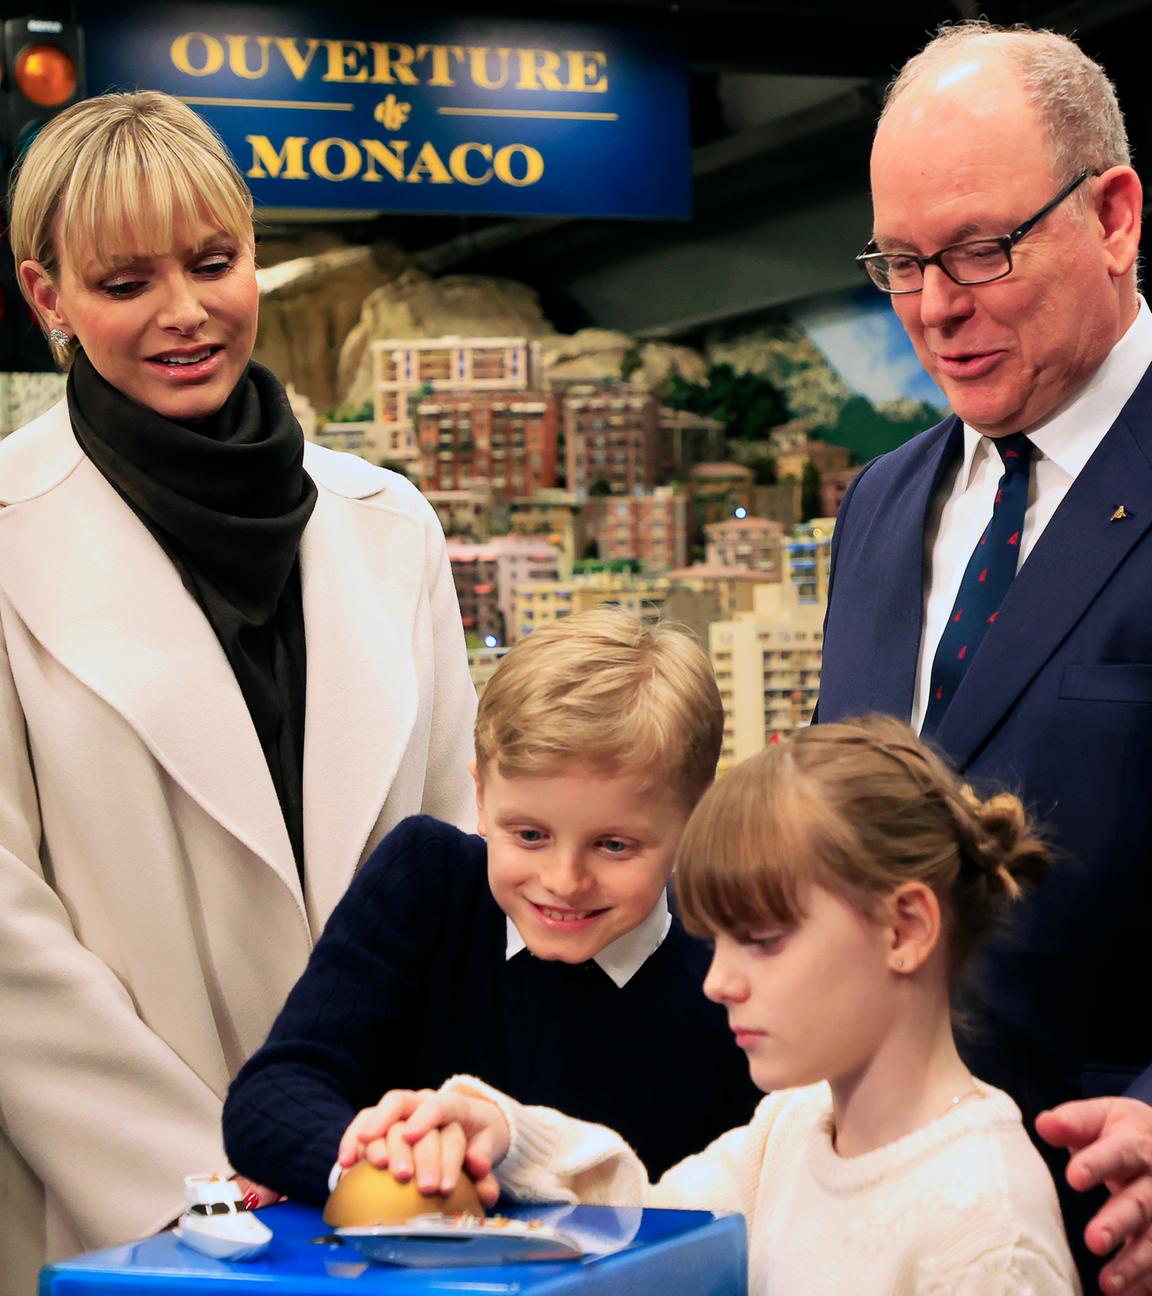 Fürst Albert II. von Monaco mit Familie bei der Eröffnung im Miniatur Wunderland in Hamburg